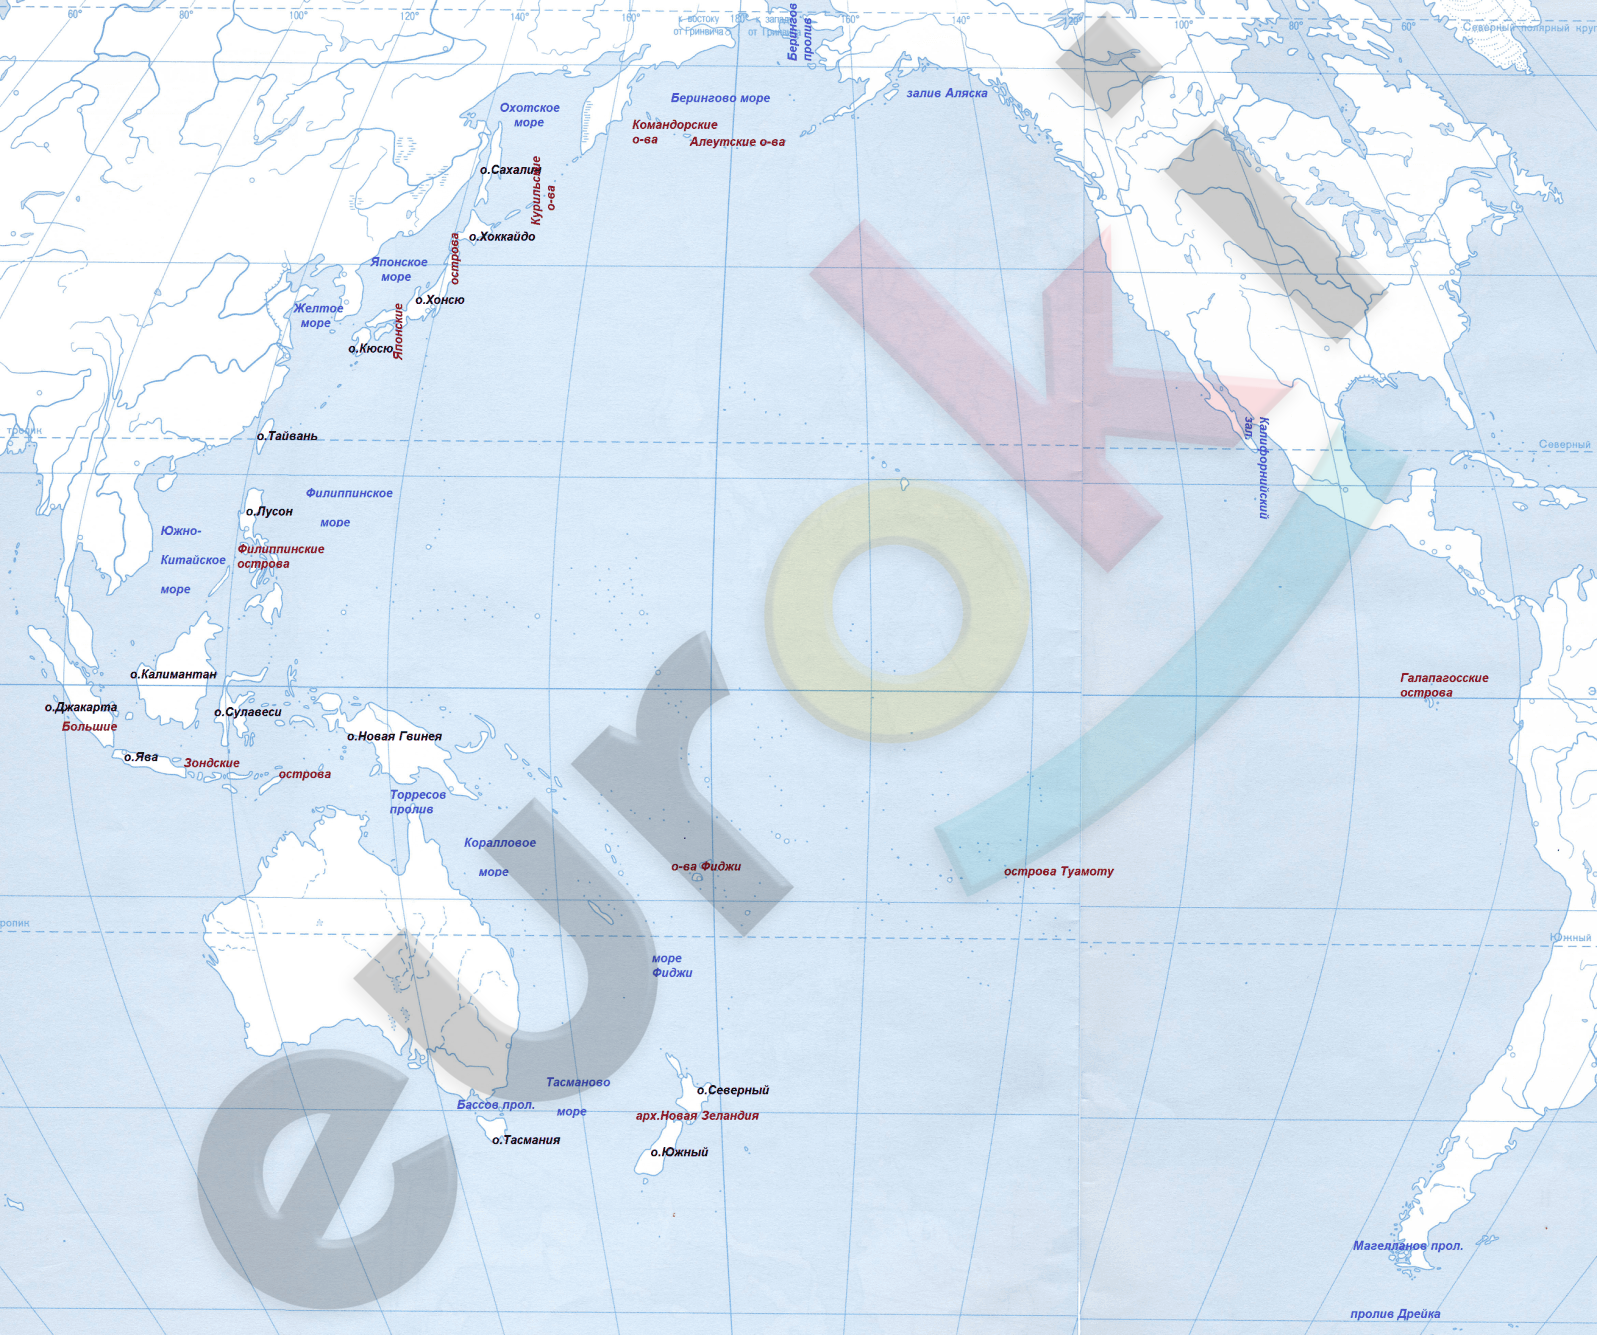 Крупнейшие архипелаги тихого океана. Карта Тихого океана с морями заливами и проливами. Проливы Тихого океана на карте. Государства имеют выход к тихому океану. Крупные острова и архипелаги Тихого океана.